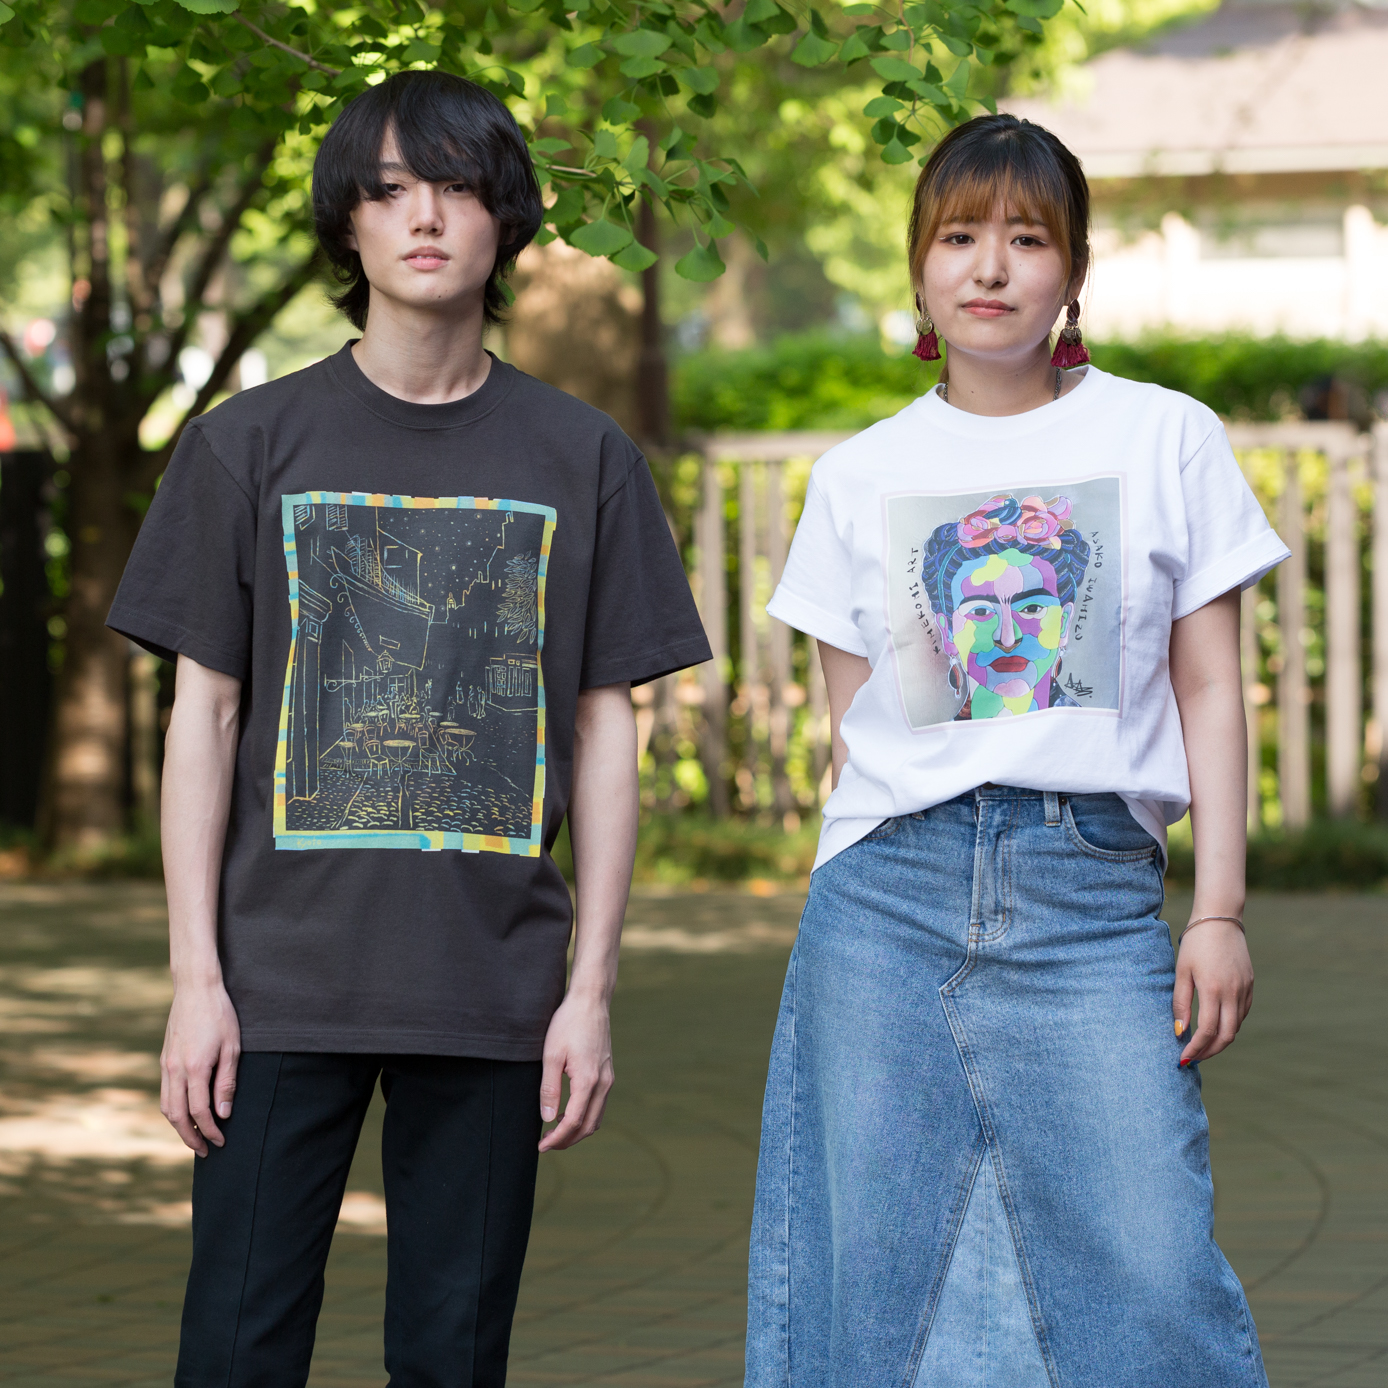 東京都美術館ミュージアムショップ Hmm Creator S Project Art 001 T Shirts アートプロジェクト始動のお知らせ 株式会社美術出版エデュケーショナルのプレスリリース